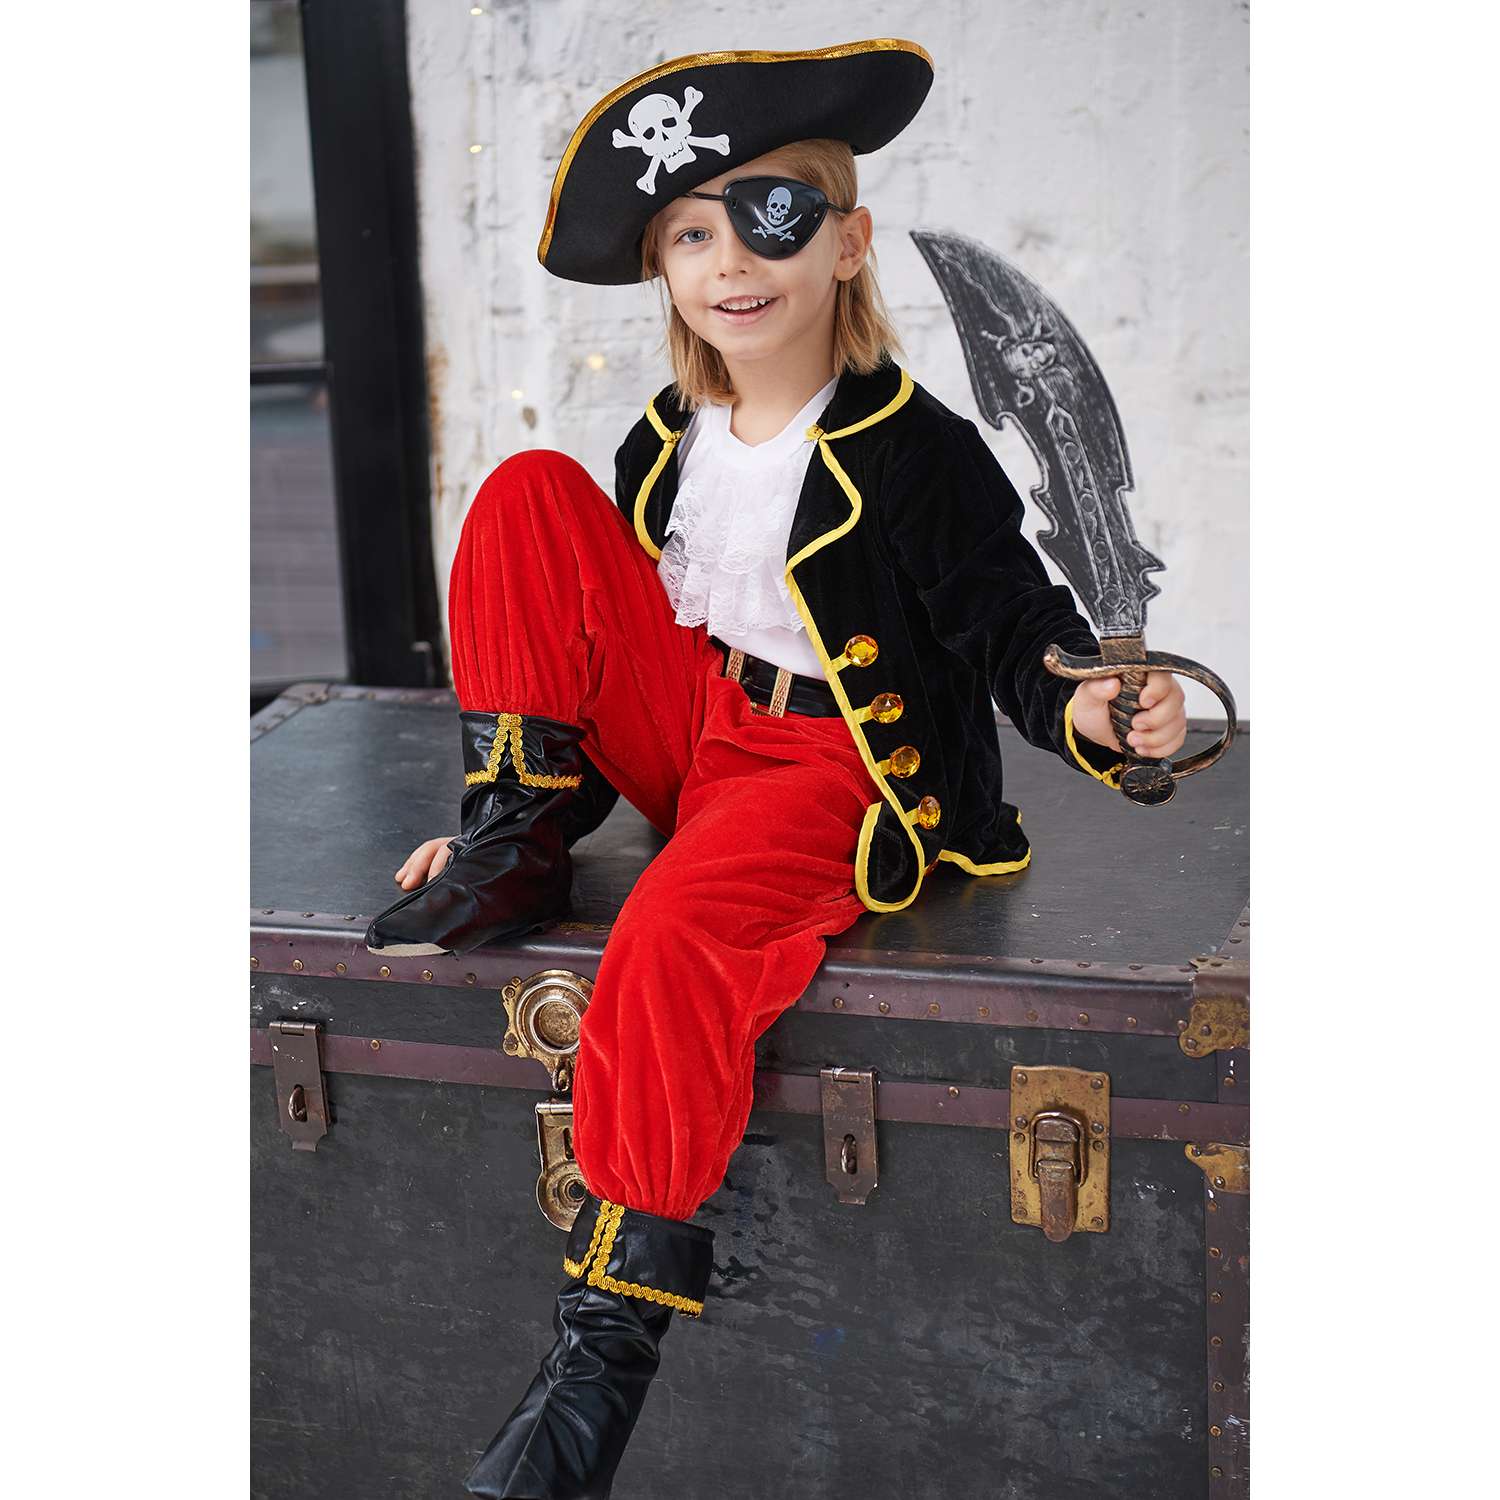 Купить детский костюм пирата в интернет-магазине : описание, отзывы, доставка по РФ р